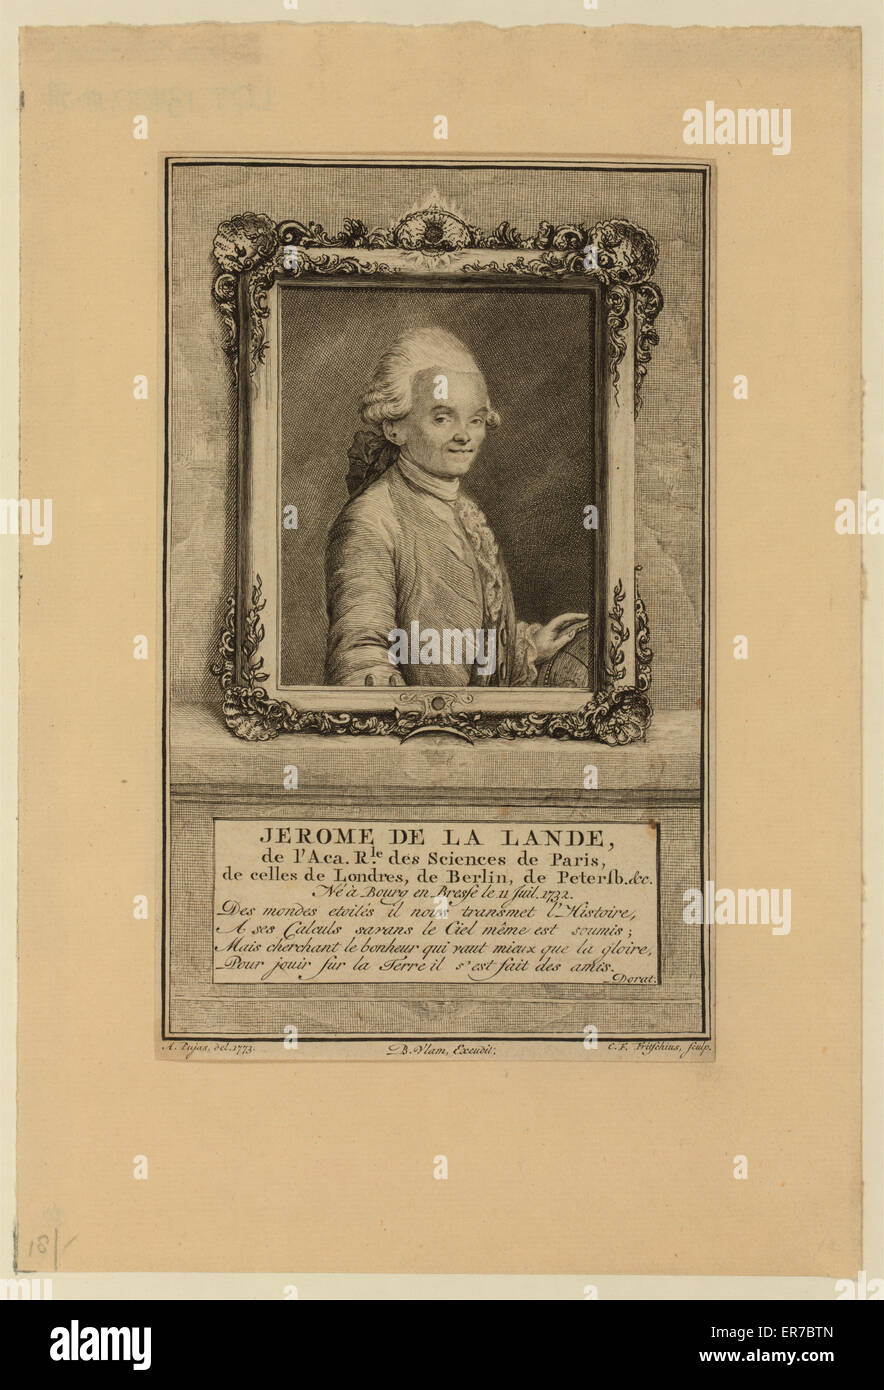 Jerome de La Lande, de l'Aca. rle. Des sciences de Paris, DE Foto de stock